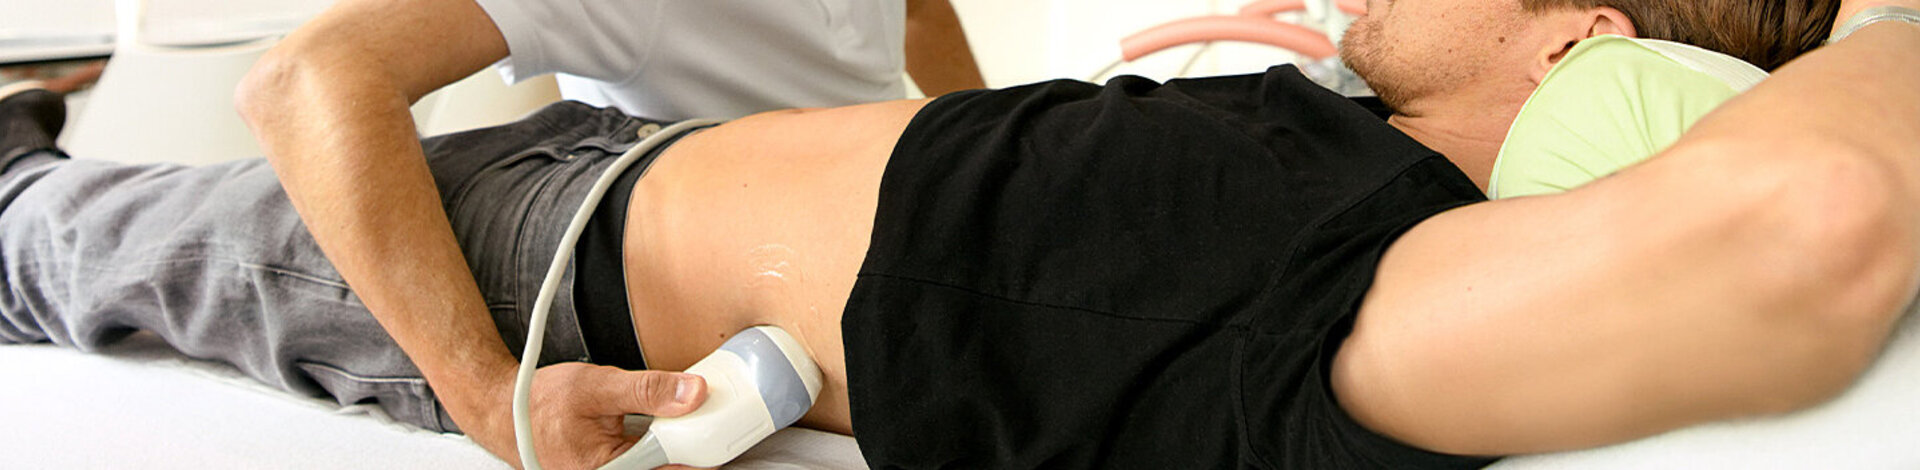 Ein Arzt untersucht mit einem Ultraschallgerät die Nieren eines jungen Mannes.